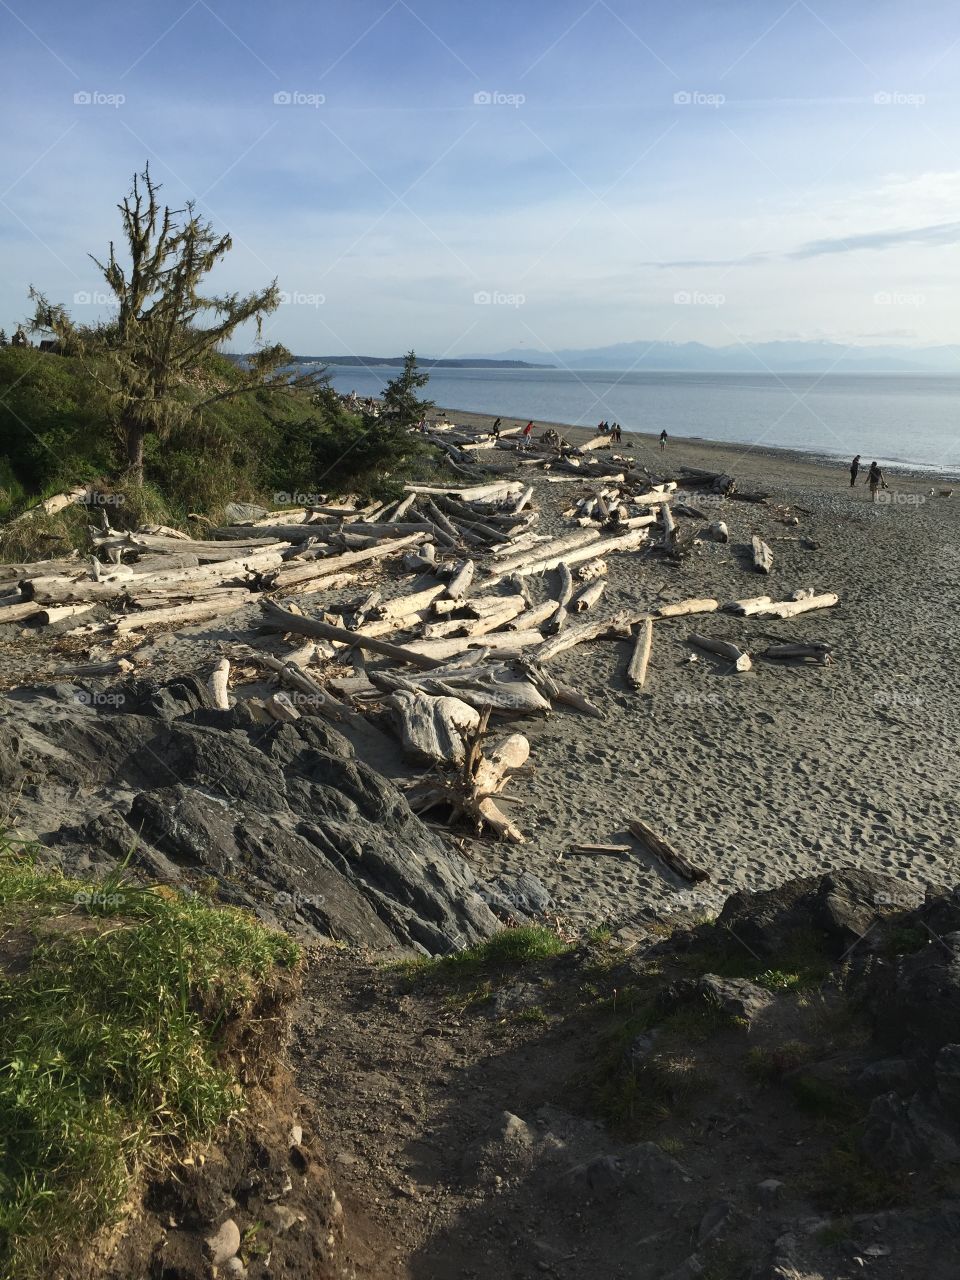 Northwest beach driftwood